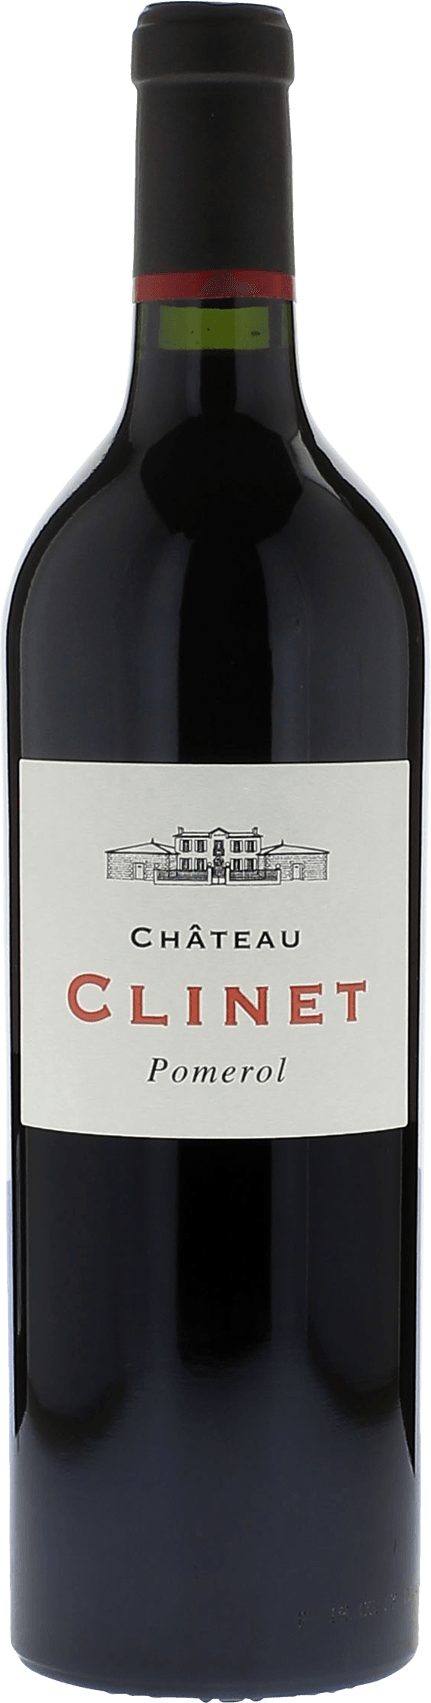 Clinet 1995  Pomerol, Bordeaux rouge